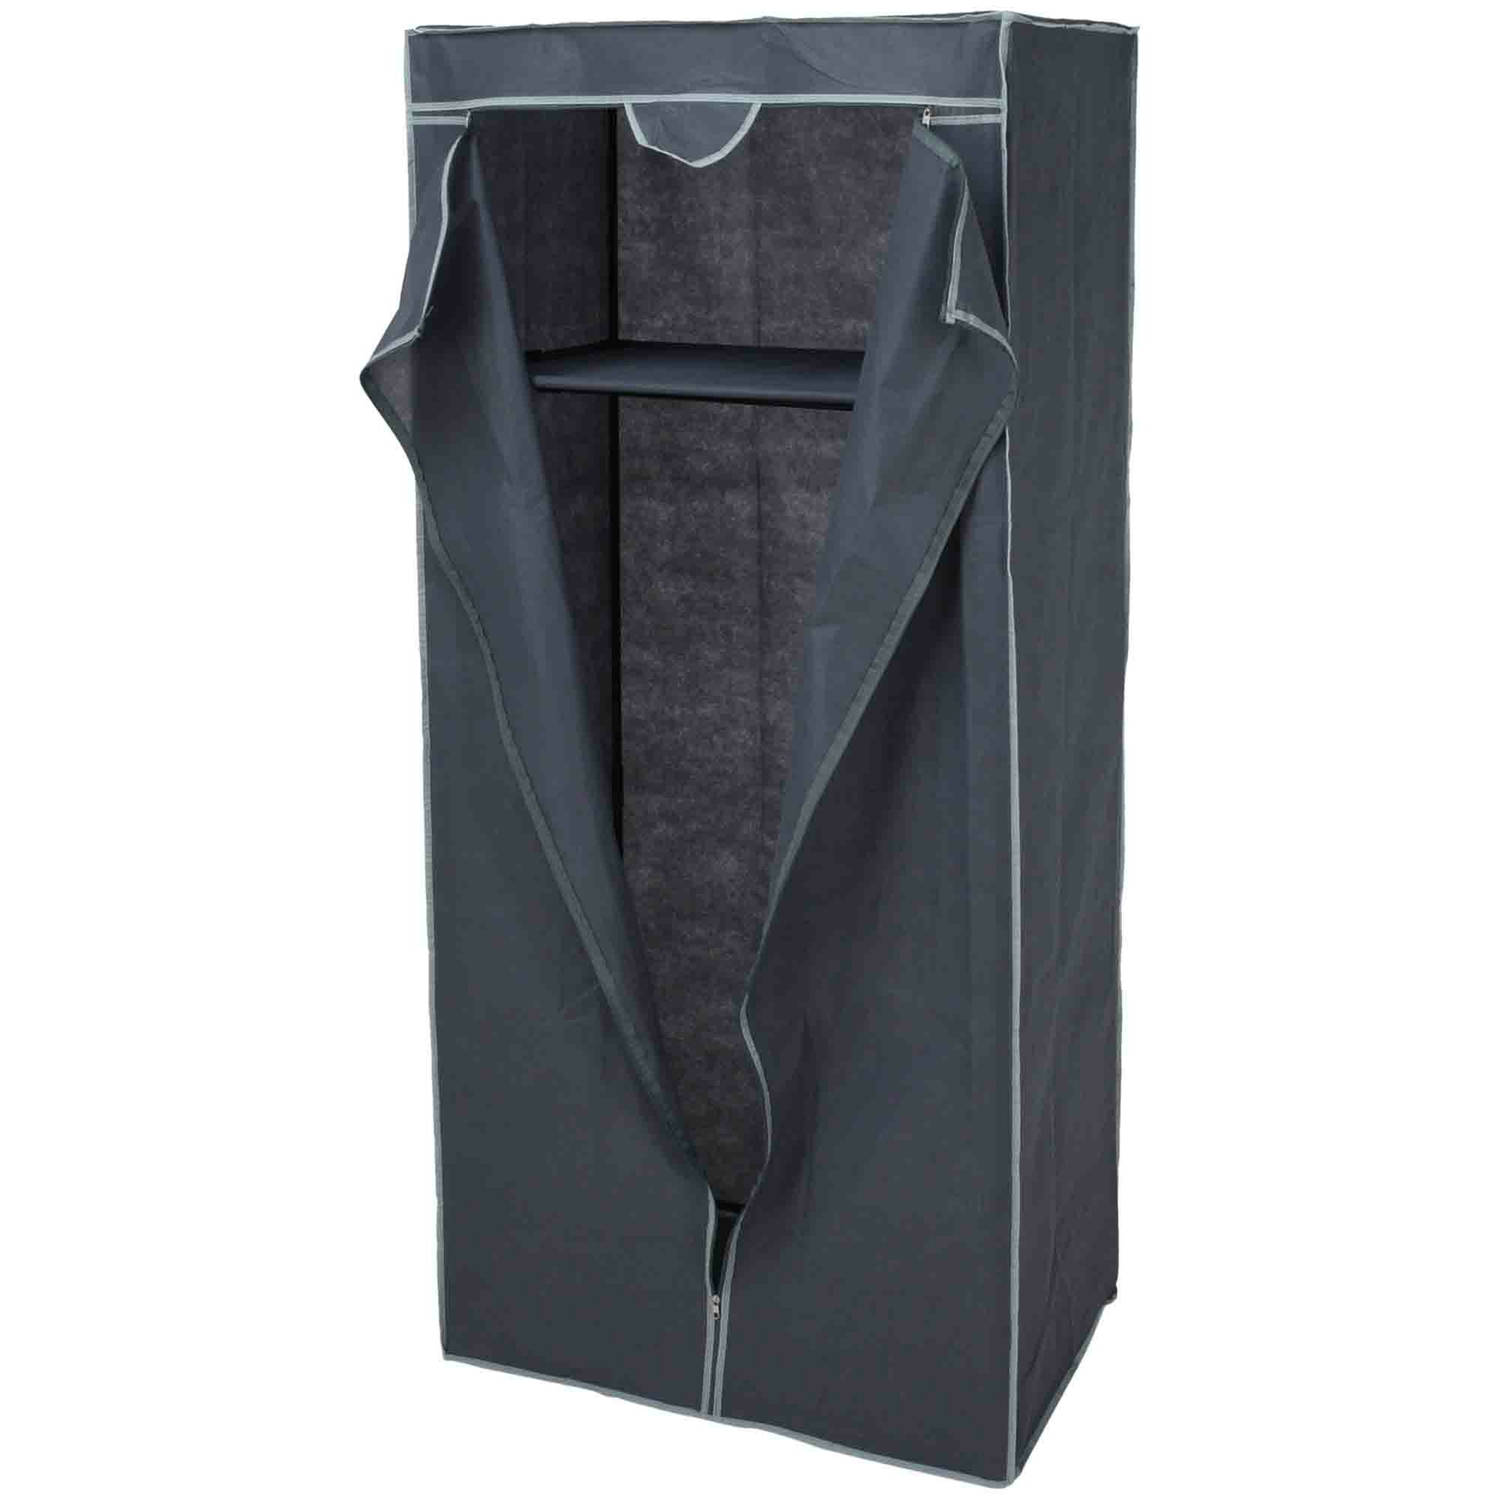 Mobiele opvouwbare kledingkast grijs 160 cm Campingkledingkasten